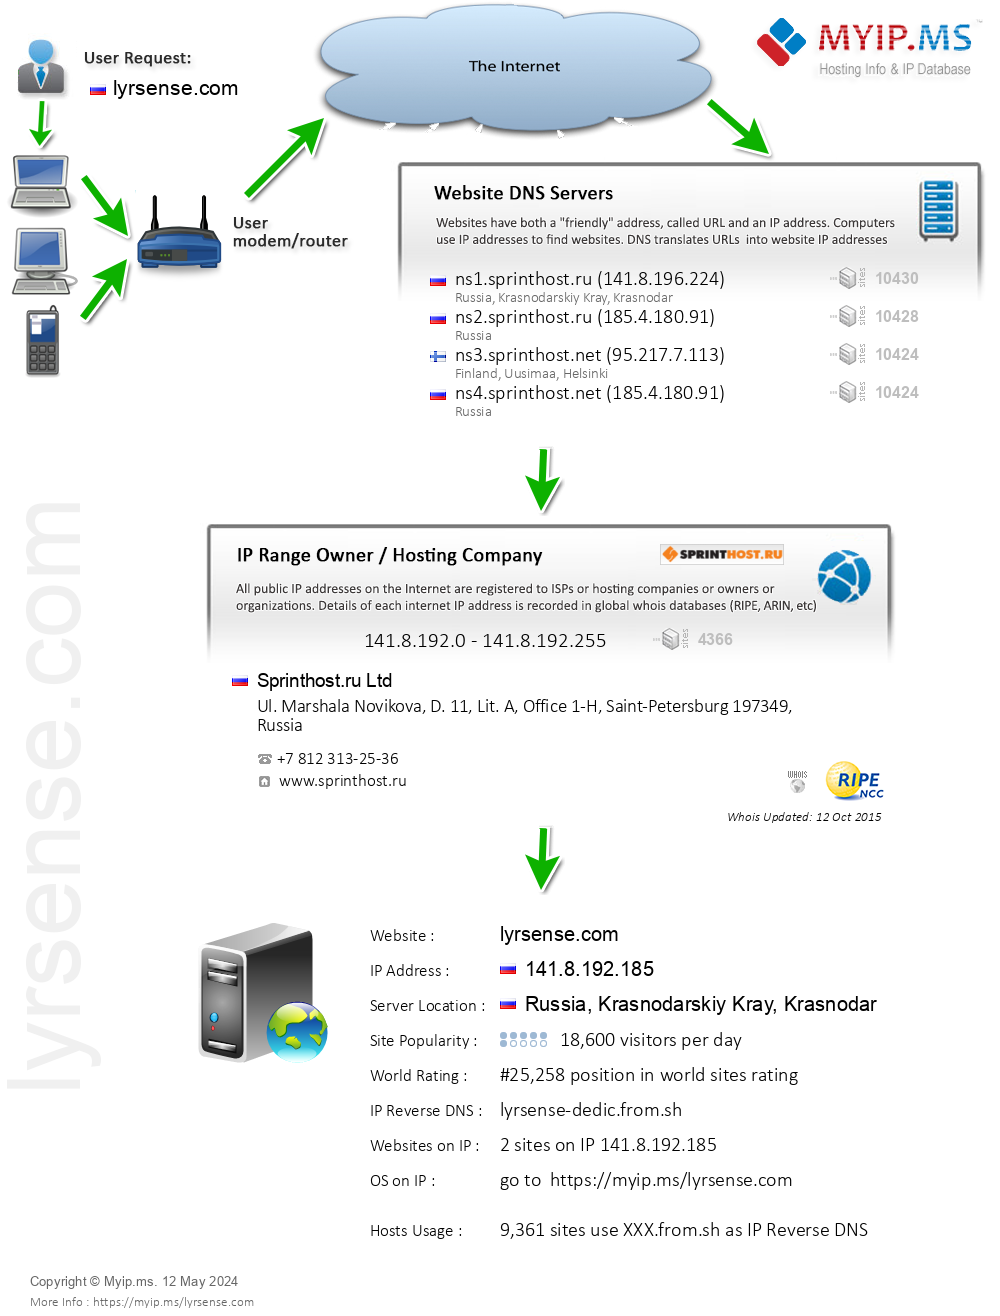 Lyrsense.com - Website Hosting Visual IP Diagram